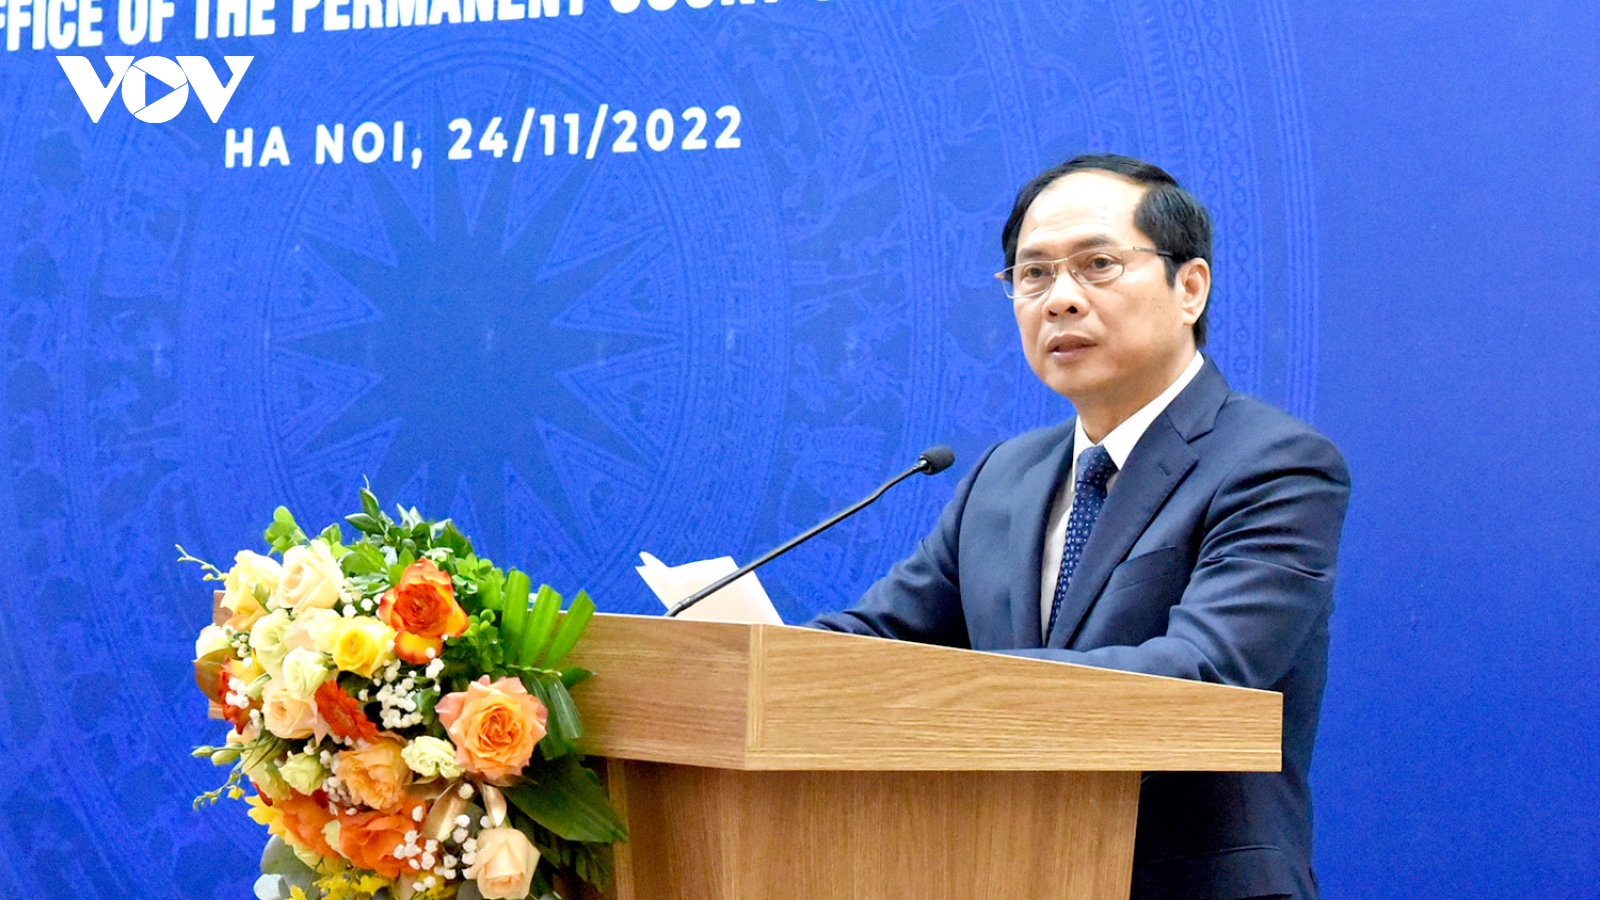 Văn phòng đại diện của PCA mang tên “Ngôi nhà Hòa bình” khai trương tại Hà Nội